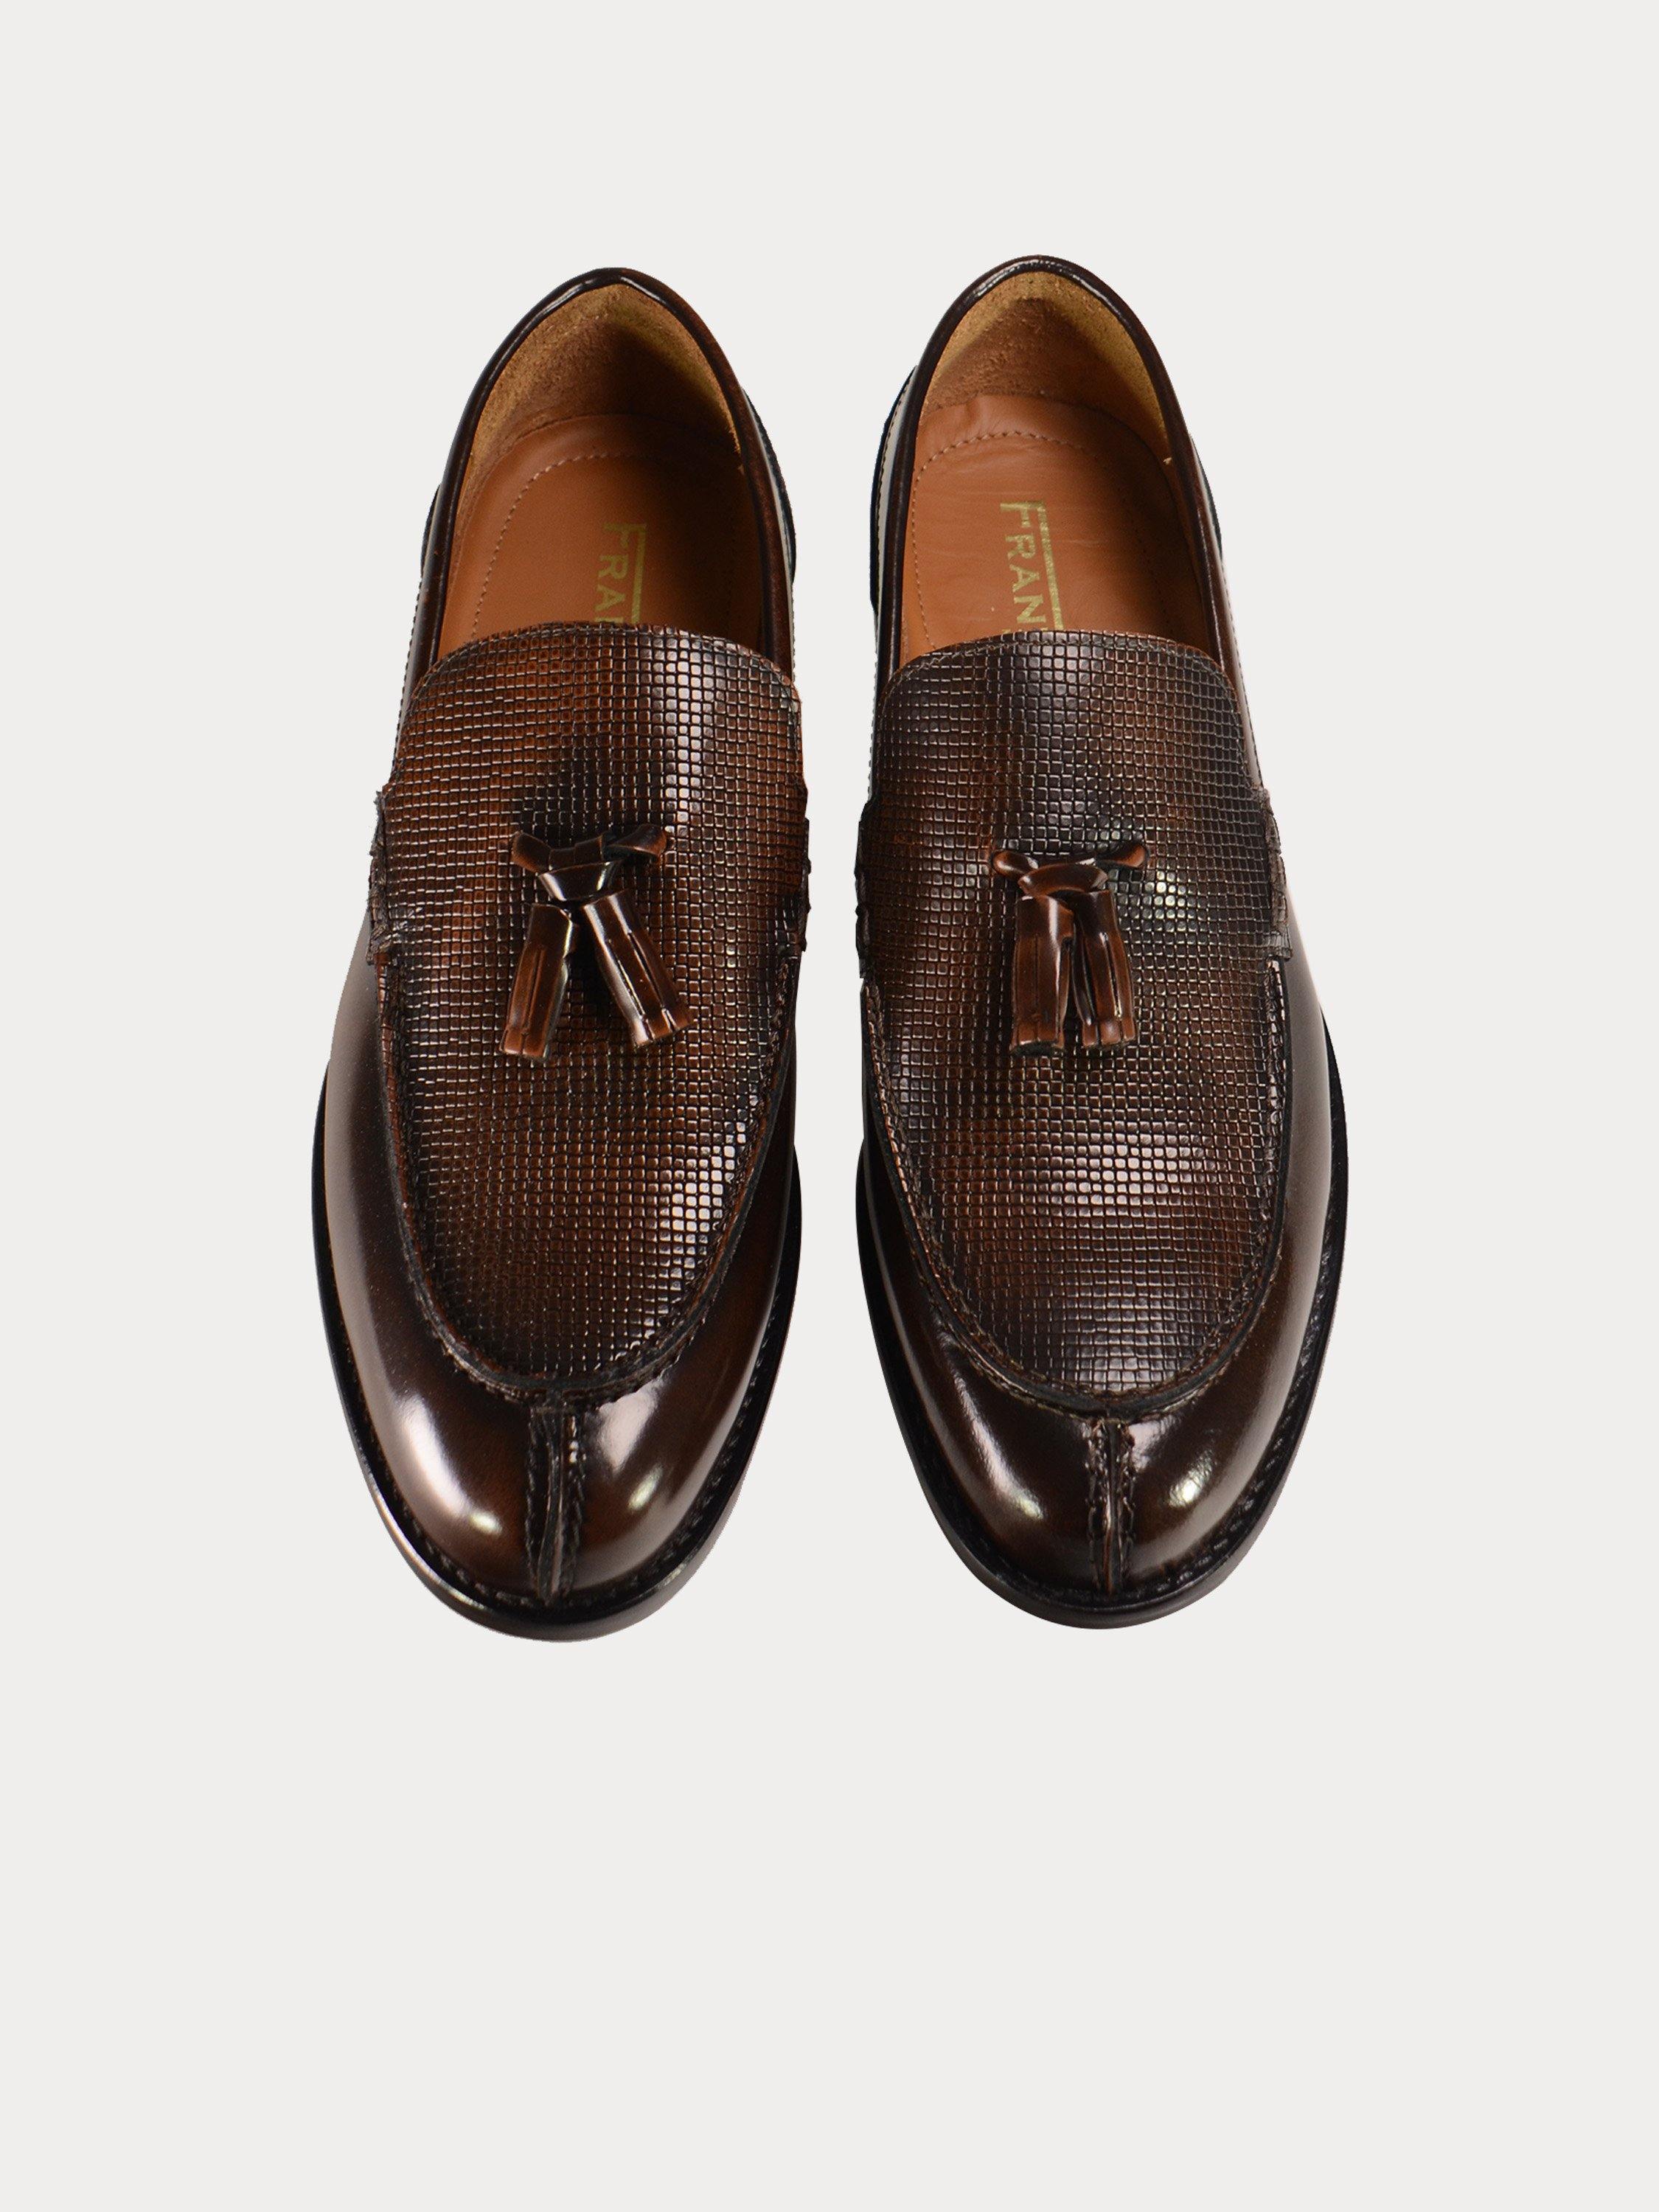 Franzini Men Formal Slip On Leather Shoes #color_Maroon